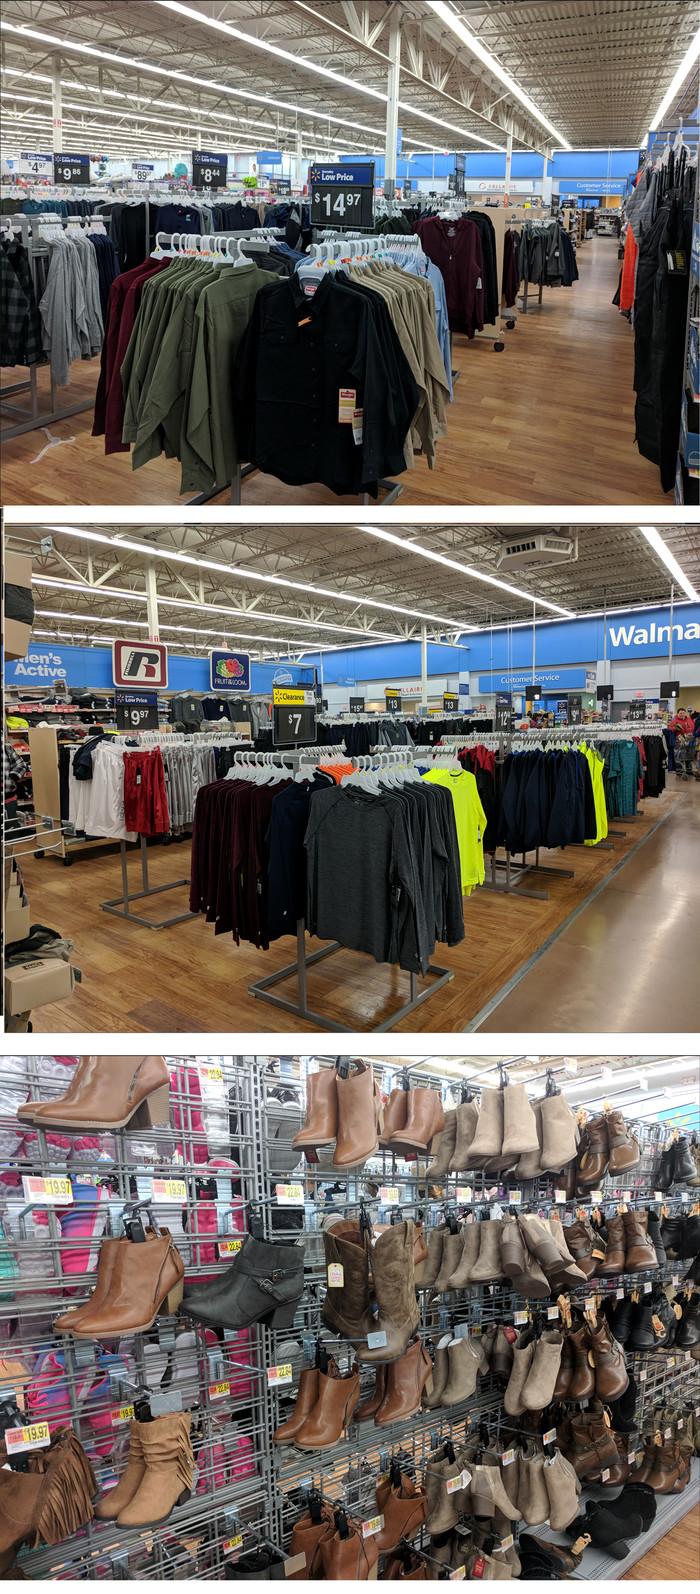 Сеть магазинов Walmart в США США, жизнь в сша, продукты питания, walmart, цены, одежда, джинсы, длиннопост